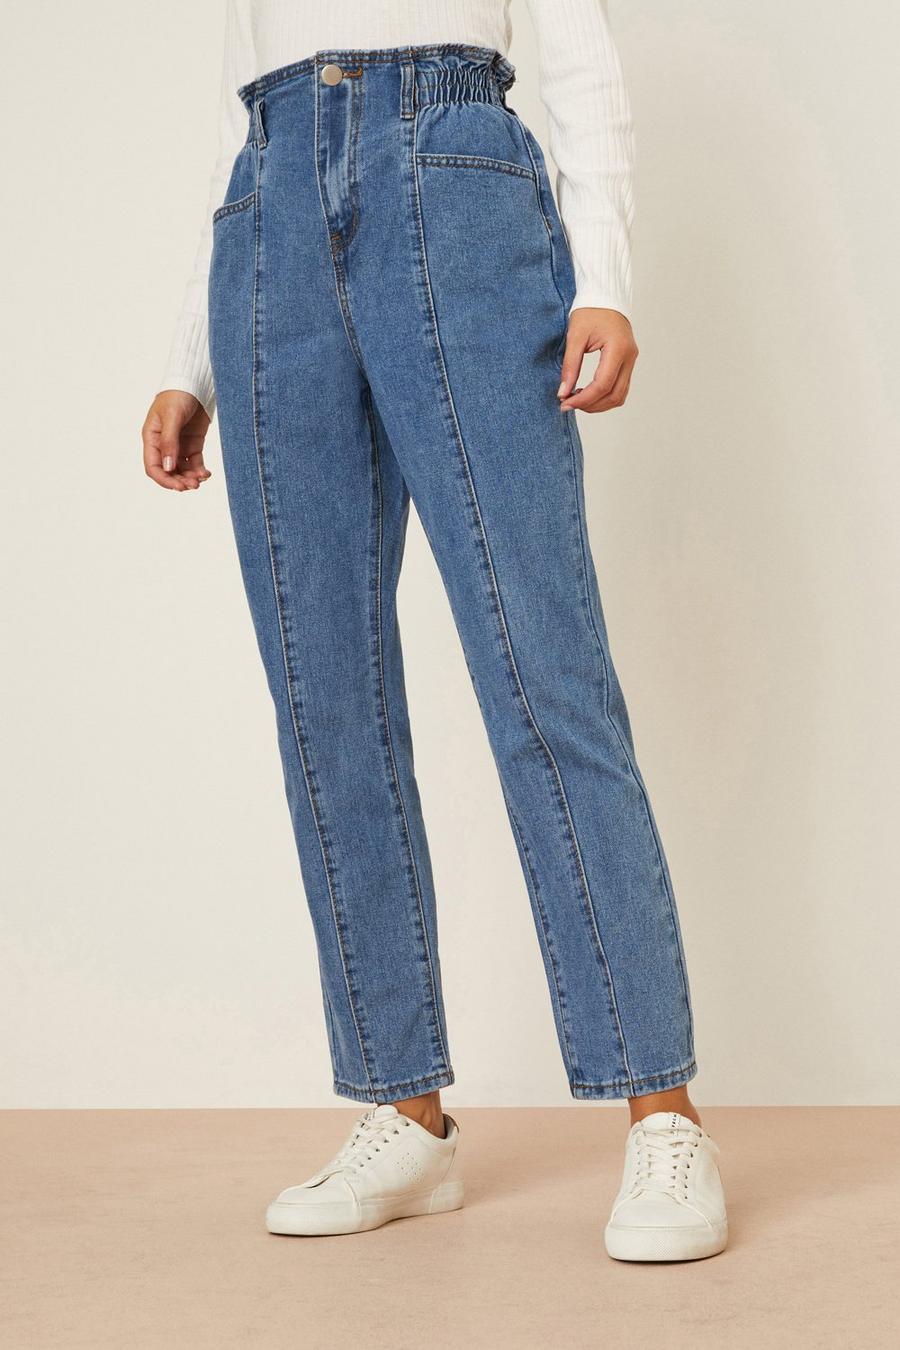 Paperbag Waist Seam Detail Jeans